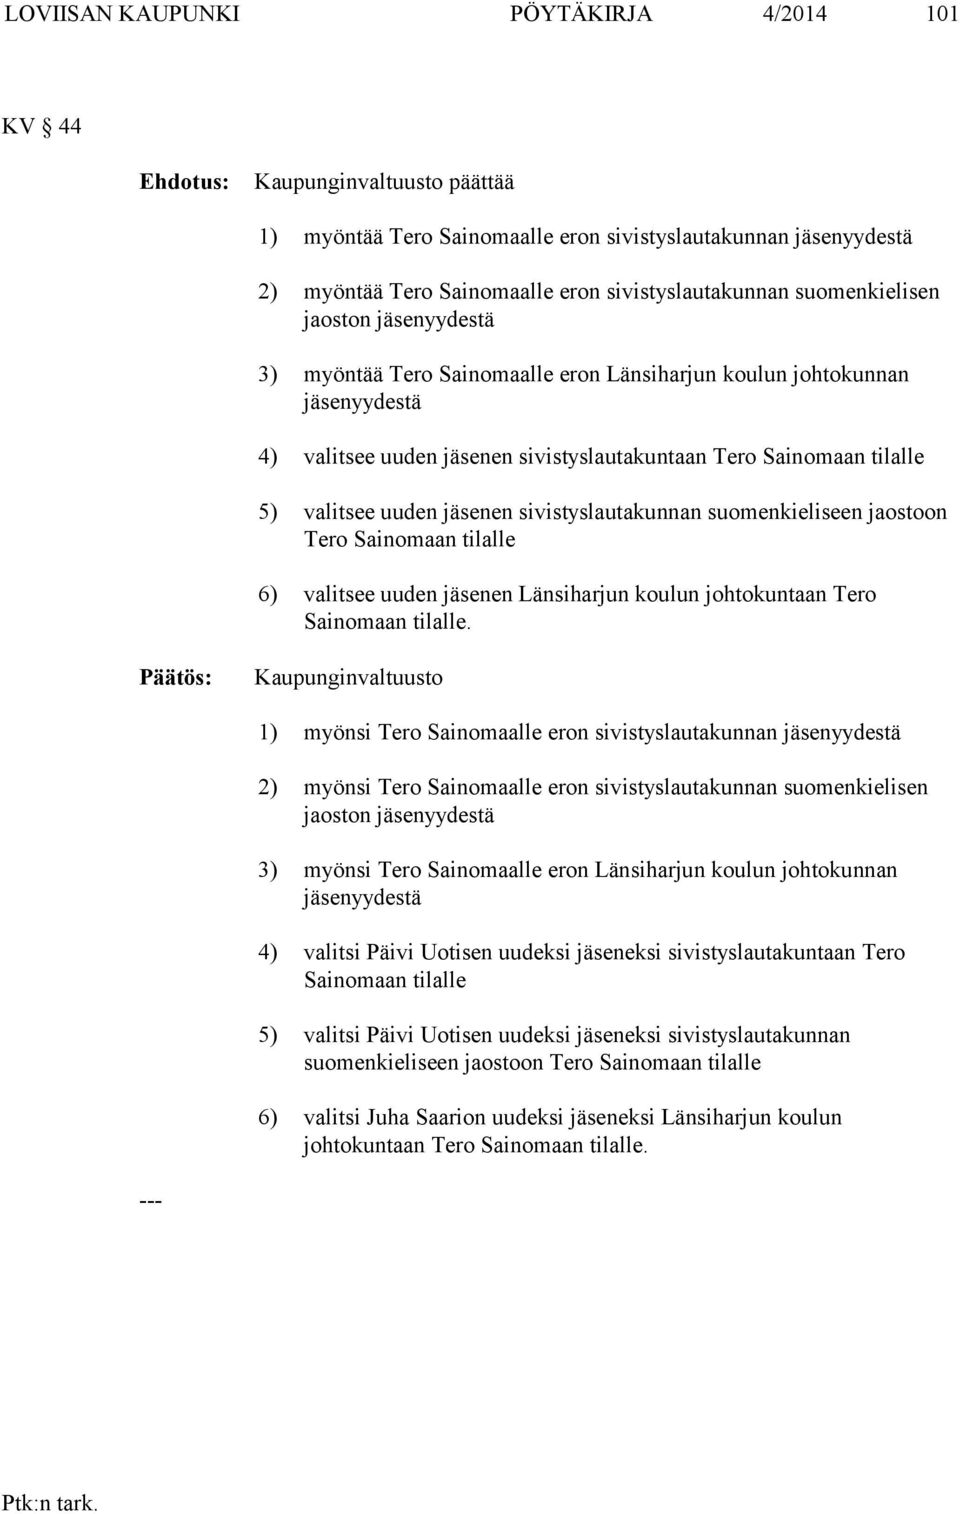 sivistyslautakunnan suomenkieliseen jaostoon Tero Sainomaan tilalle 6) valitsee uuden en Länsiharjun koulun johtokuntaan Tero Sainomaan tilalle.